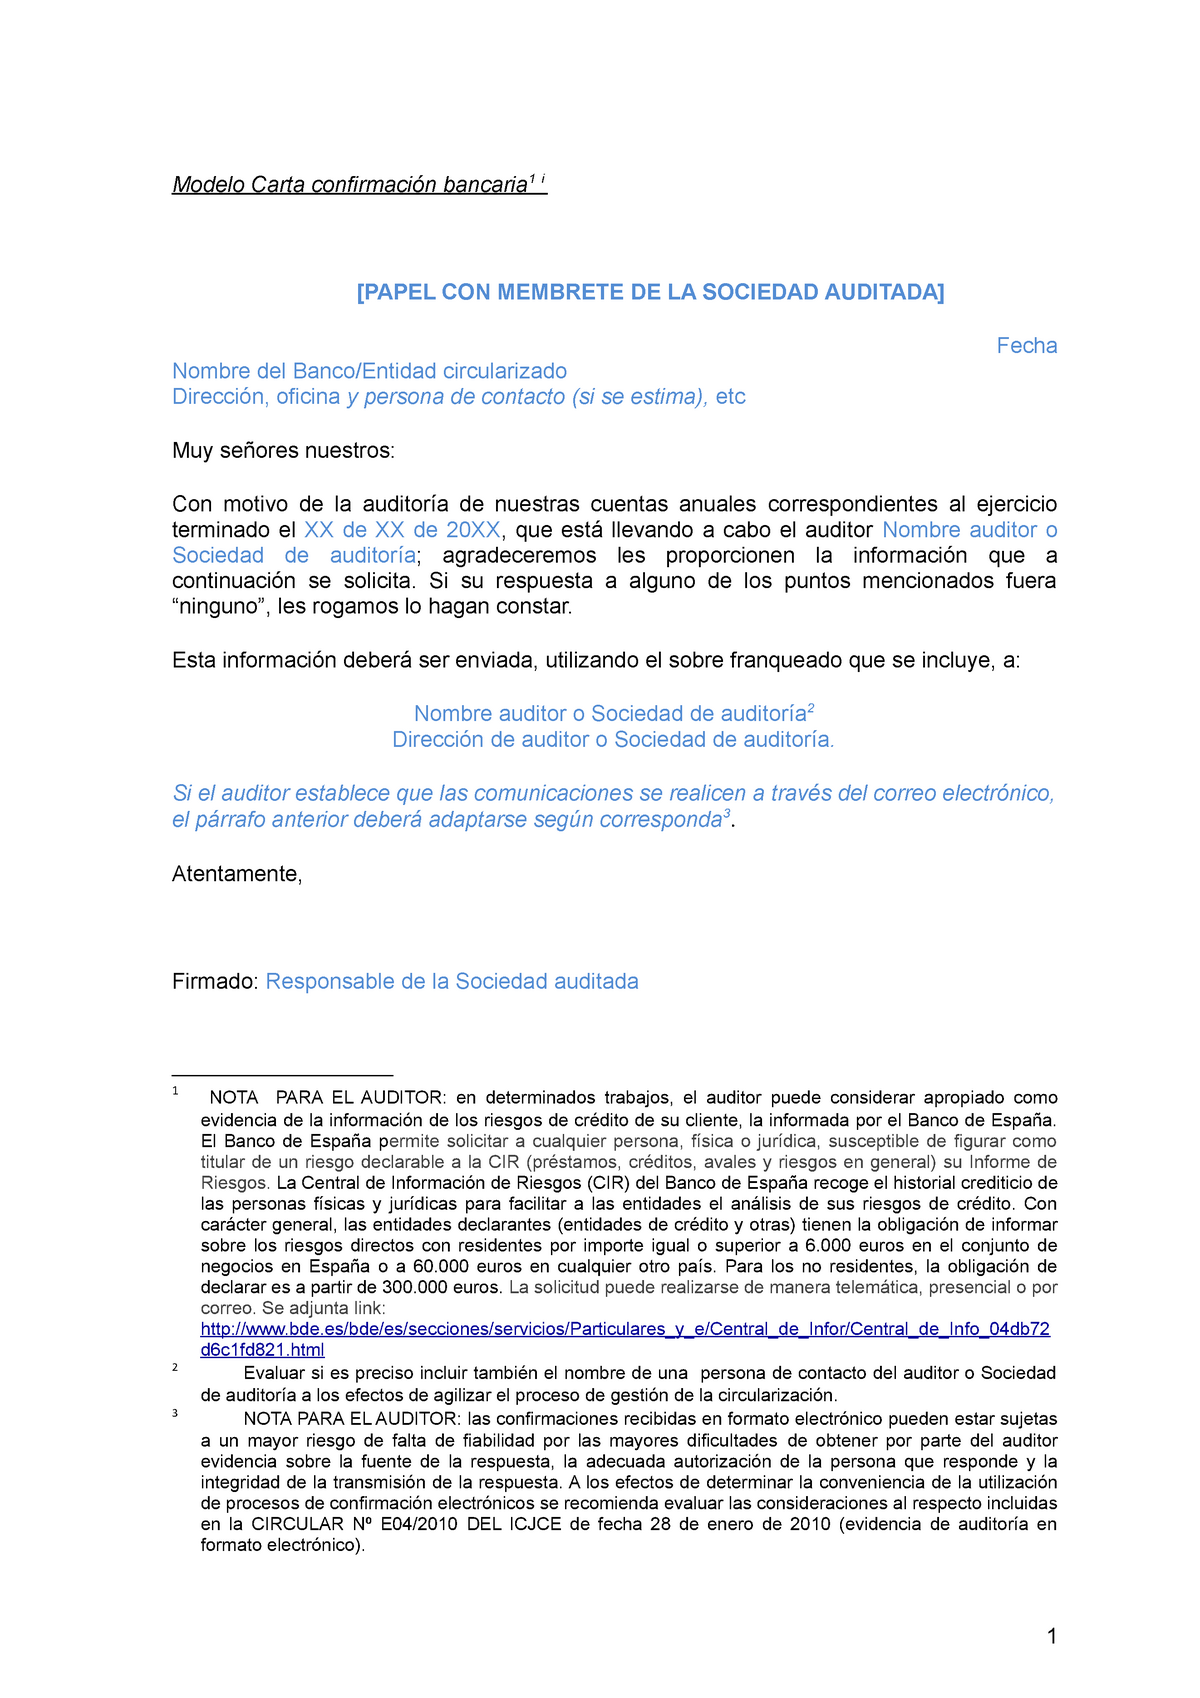 Modelocartaconfirmacionbancaria - Modelo Carta confirmación bancaria 1 i  [PAPEL CON MEMBRETE DE LA - Studocu